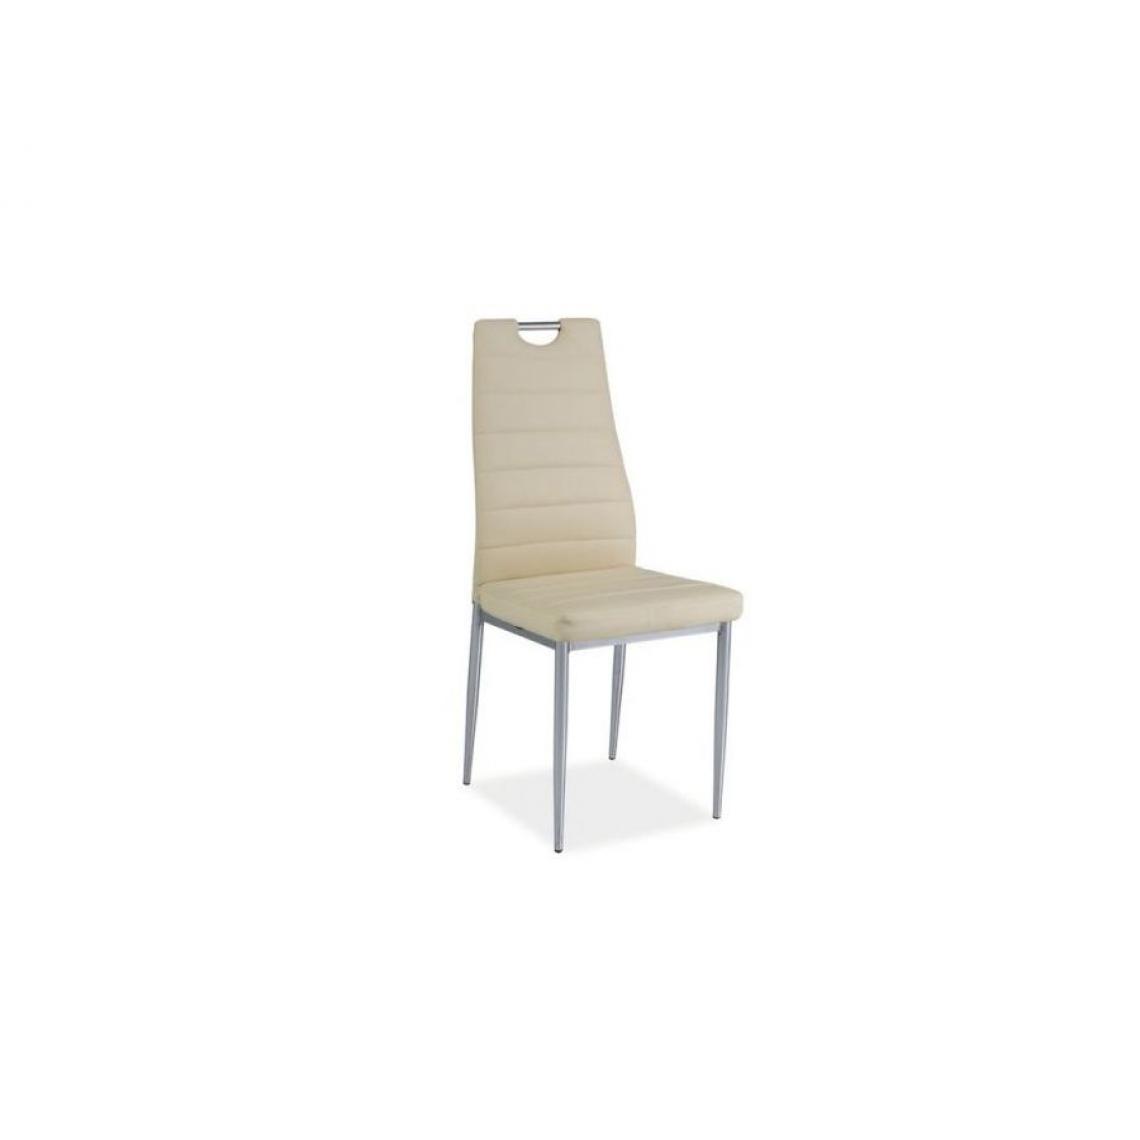 Hucoco - INAYA | Chaise style minimaliste salle à manger bureau salon | 96x40x38 cm | Rembourrage en cuir écologique | Dossier profilé - Crème - Chaises